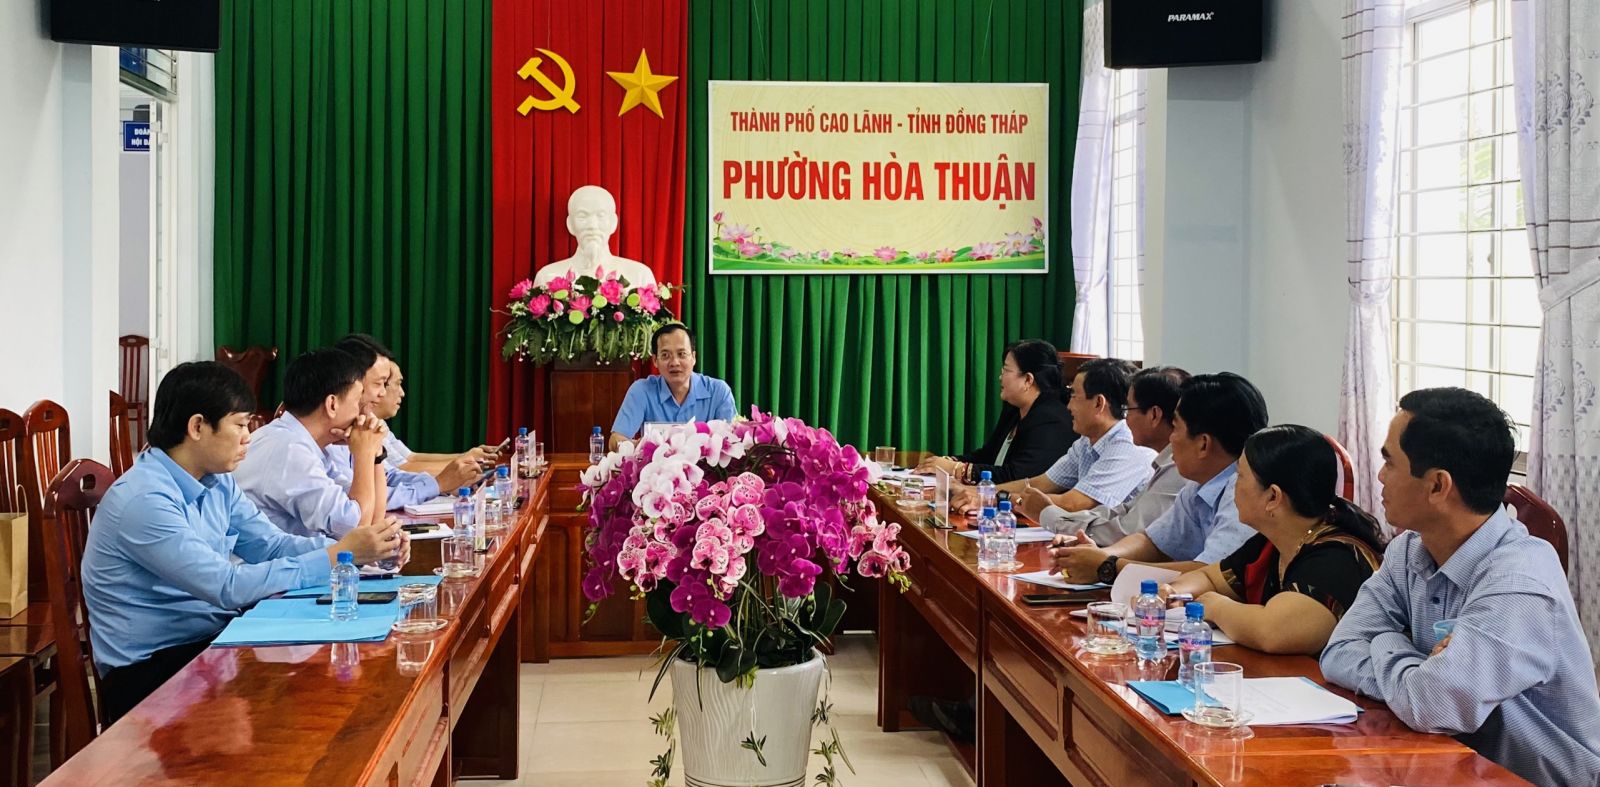 Đồng chí Trần Trí Quang, Bí thư Thành uỷ Cao Lãnh đến thăm và làm việc với Đảng uỷ phường Hoà Thuận